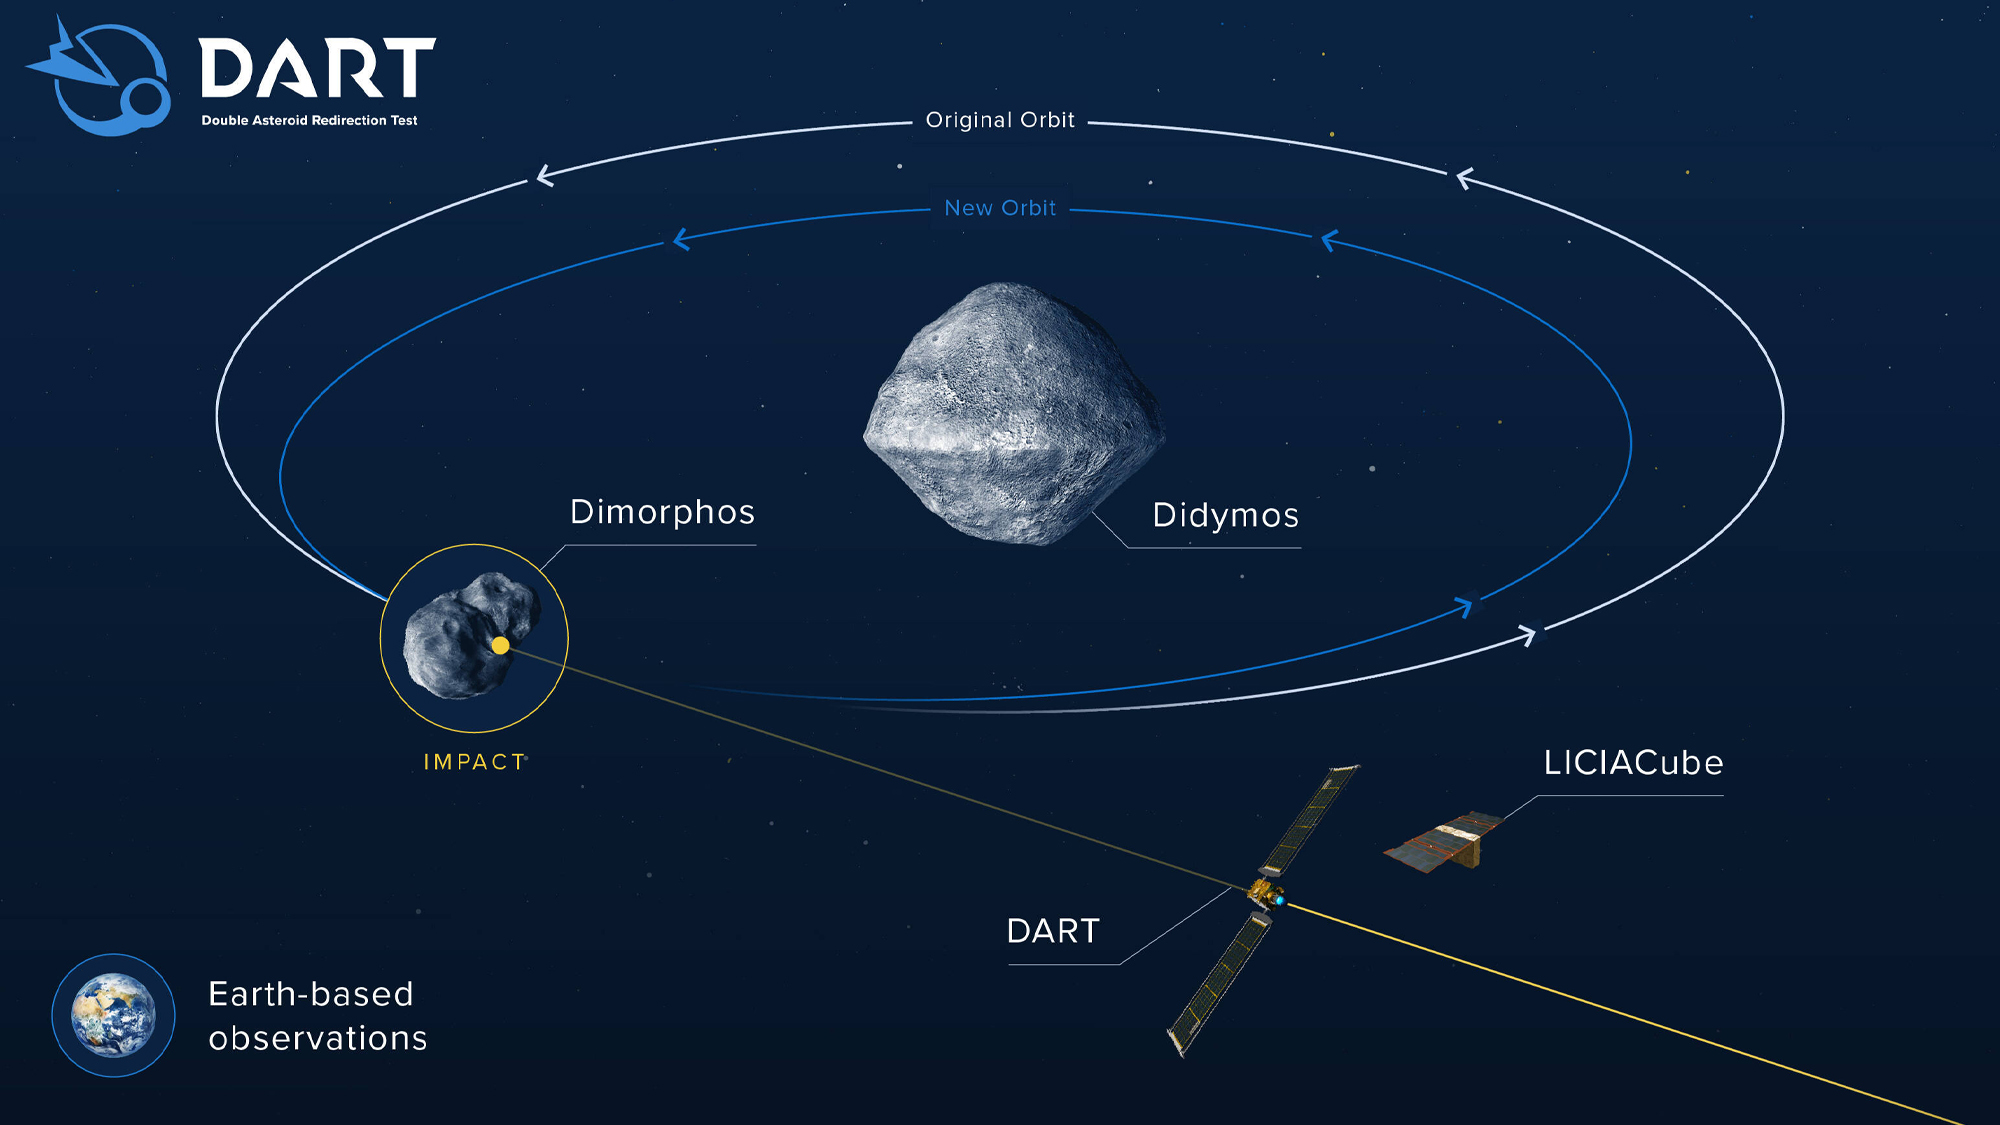 Choque de asteroides: por primera vez, la NASA prueba la defensa espacial contra la Tierra, poniendo en peligro los cuerpos celestes